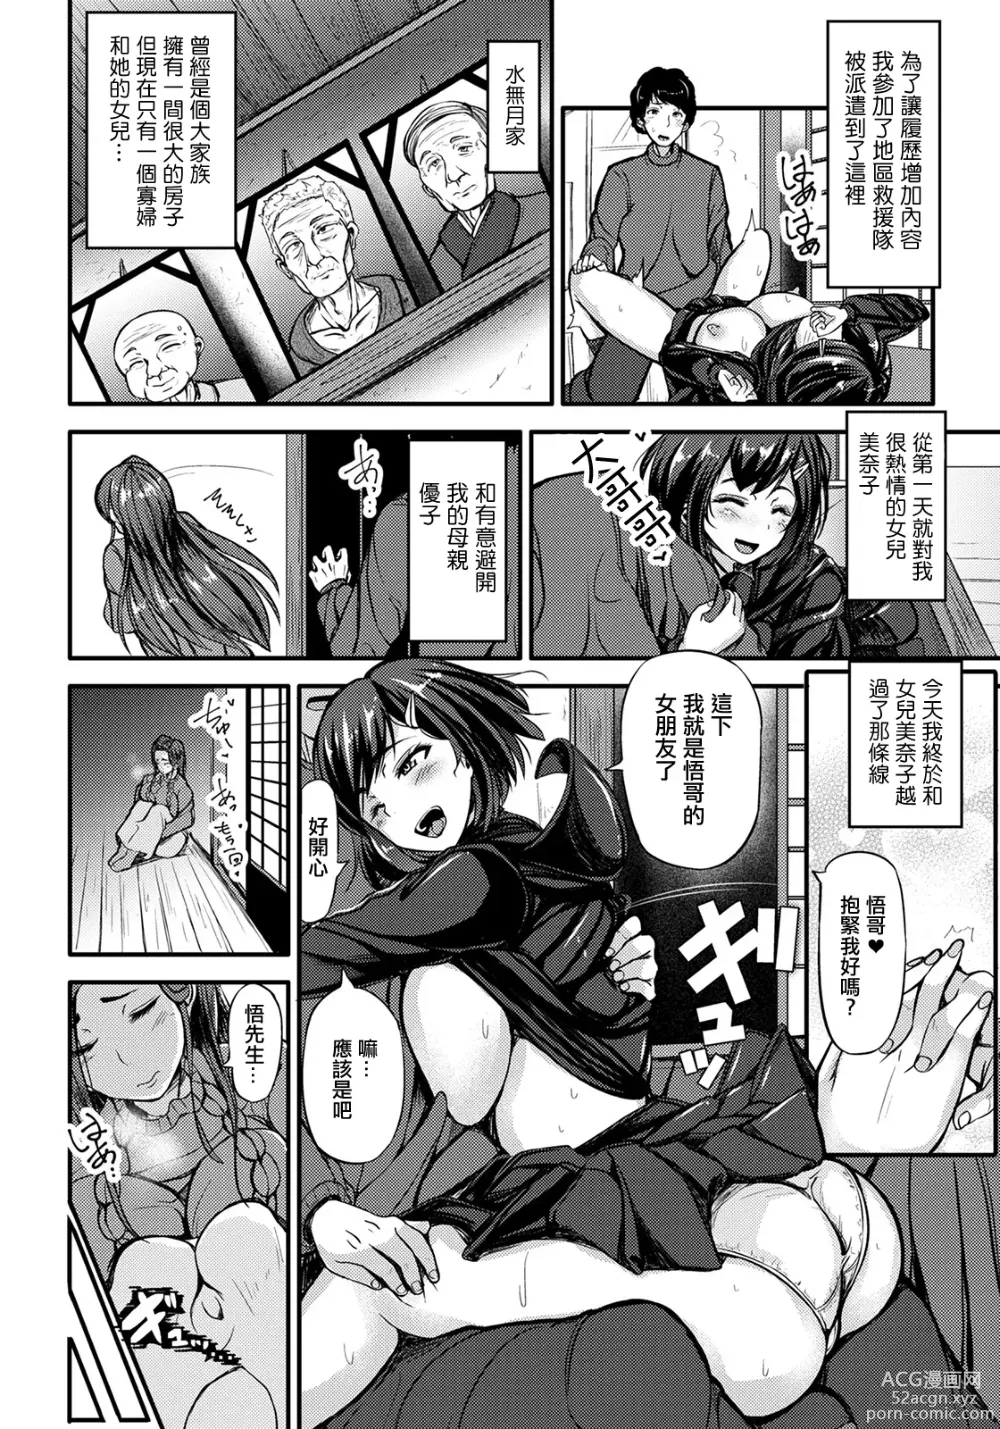 Page 2 of manga OYAKOMITSU